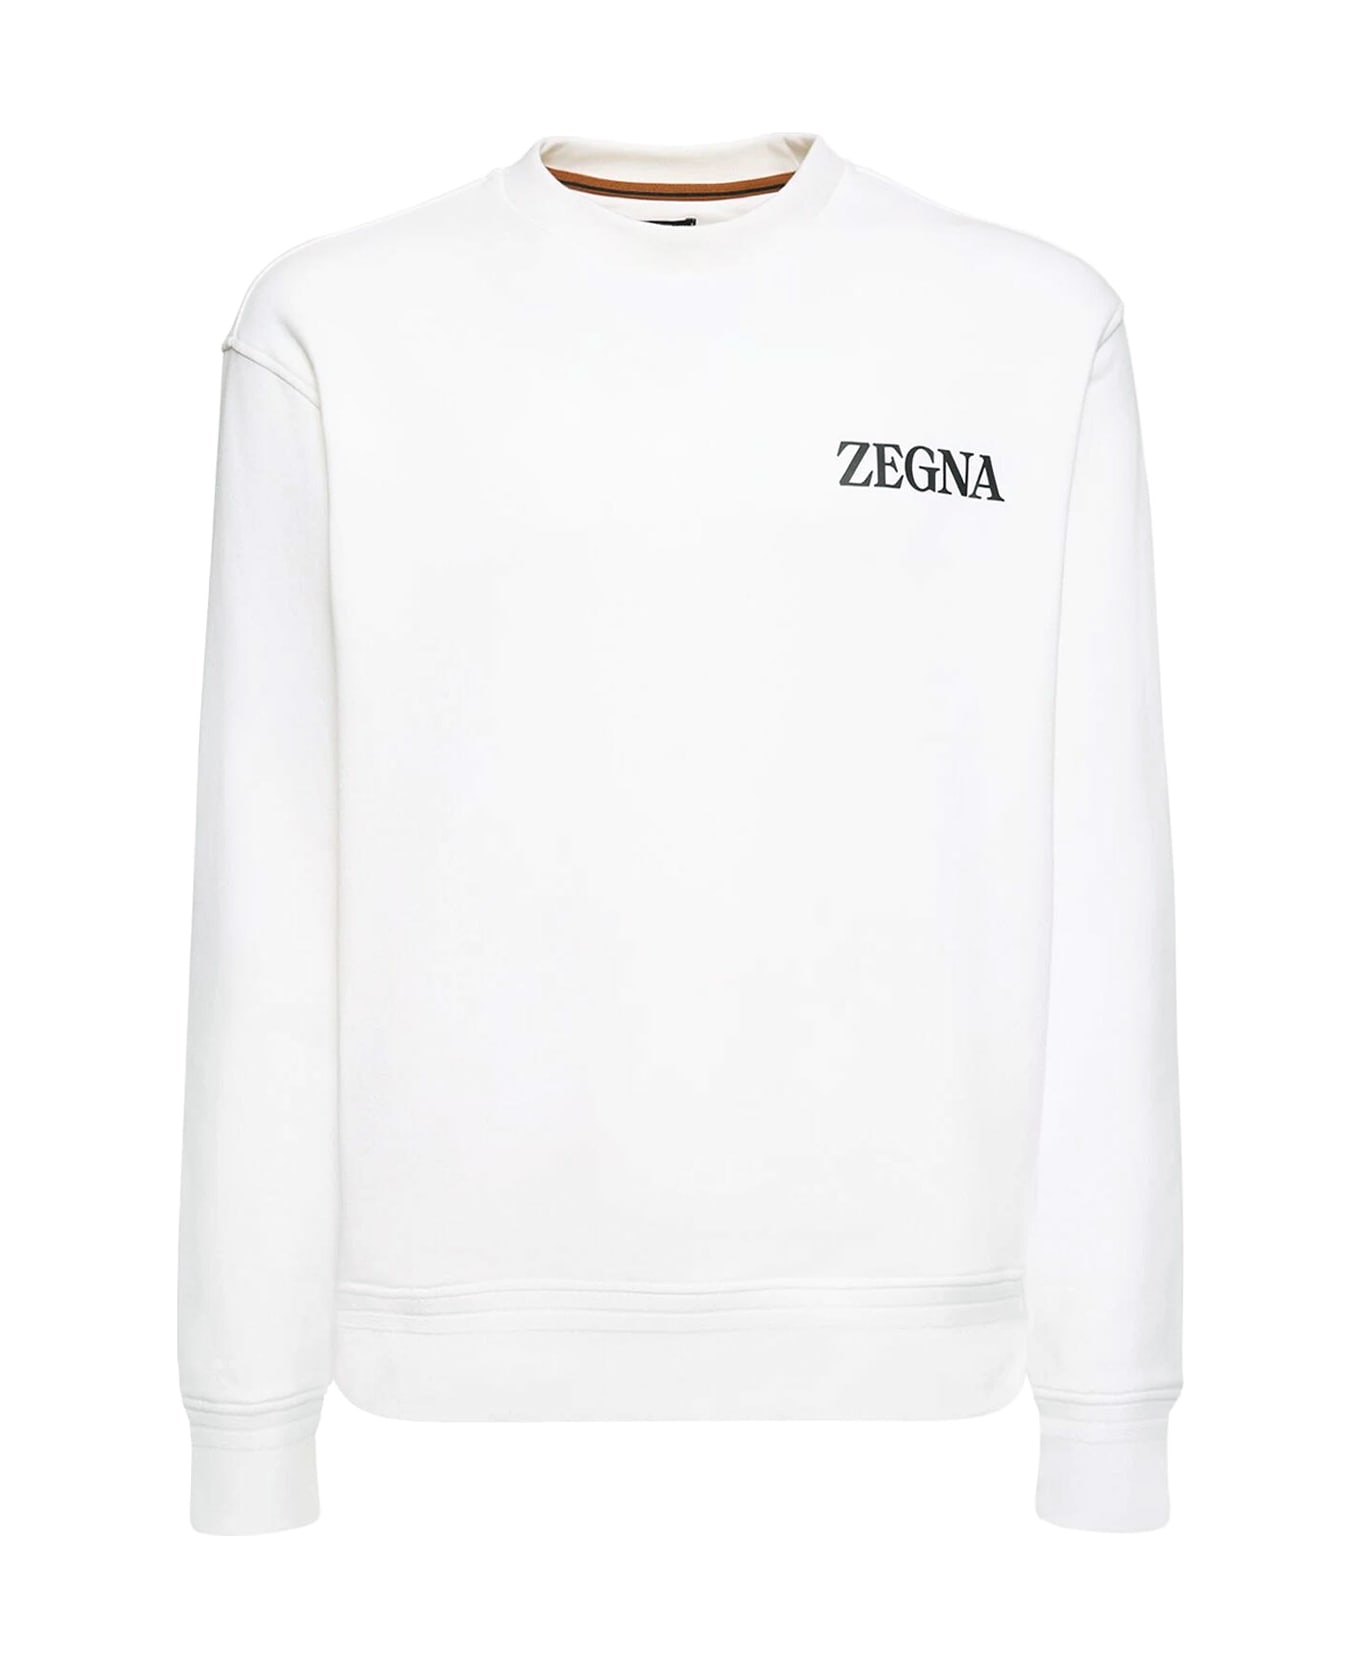 Zegna #usetheexisting Sweatshirt - White